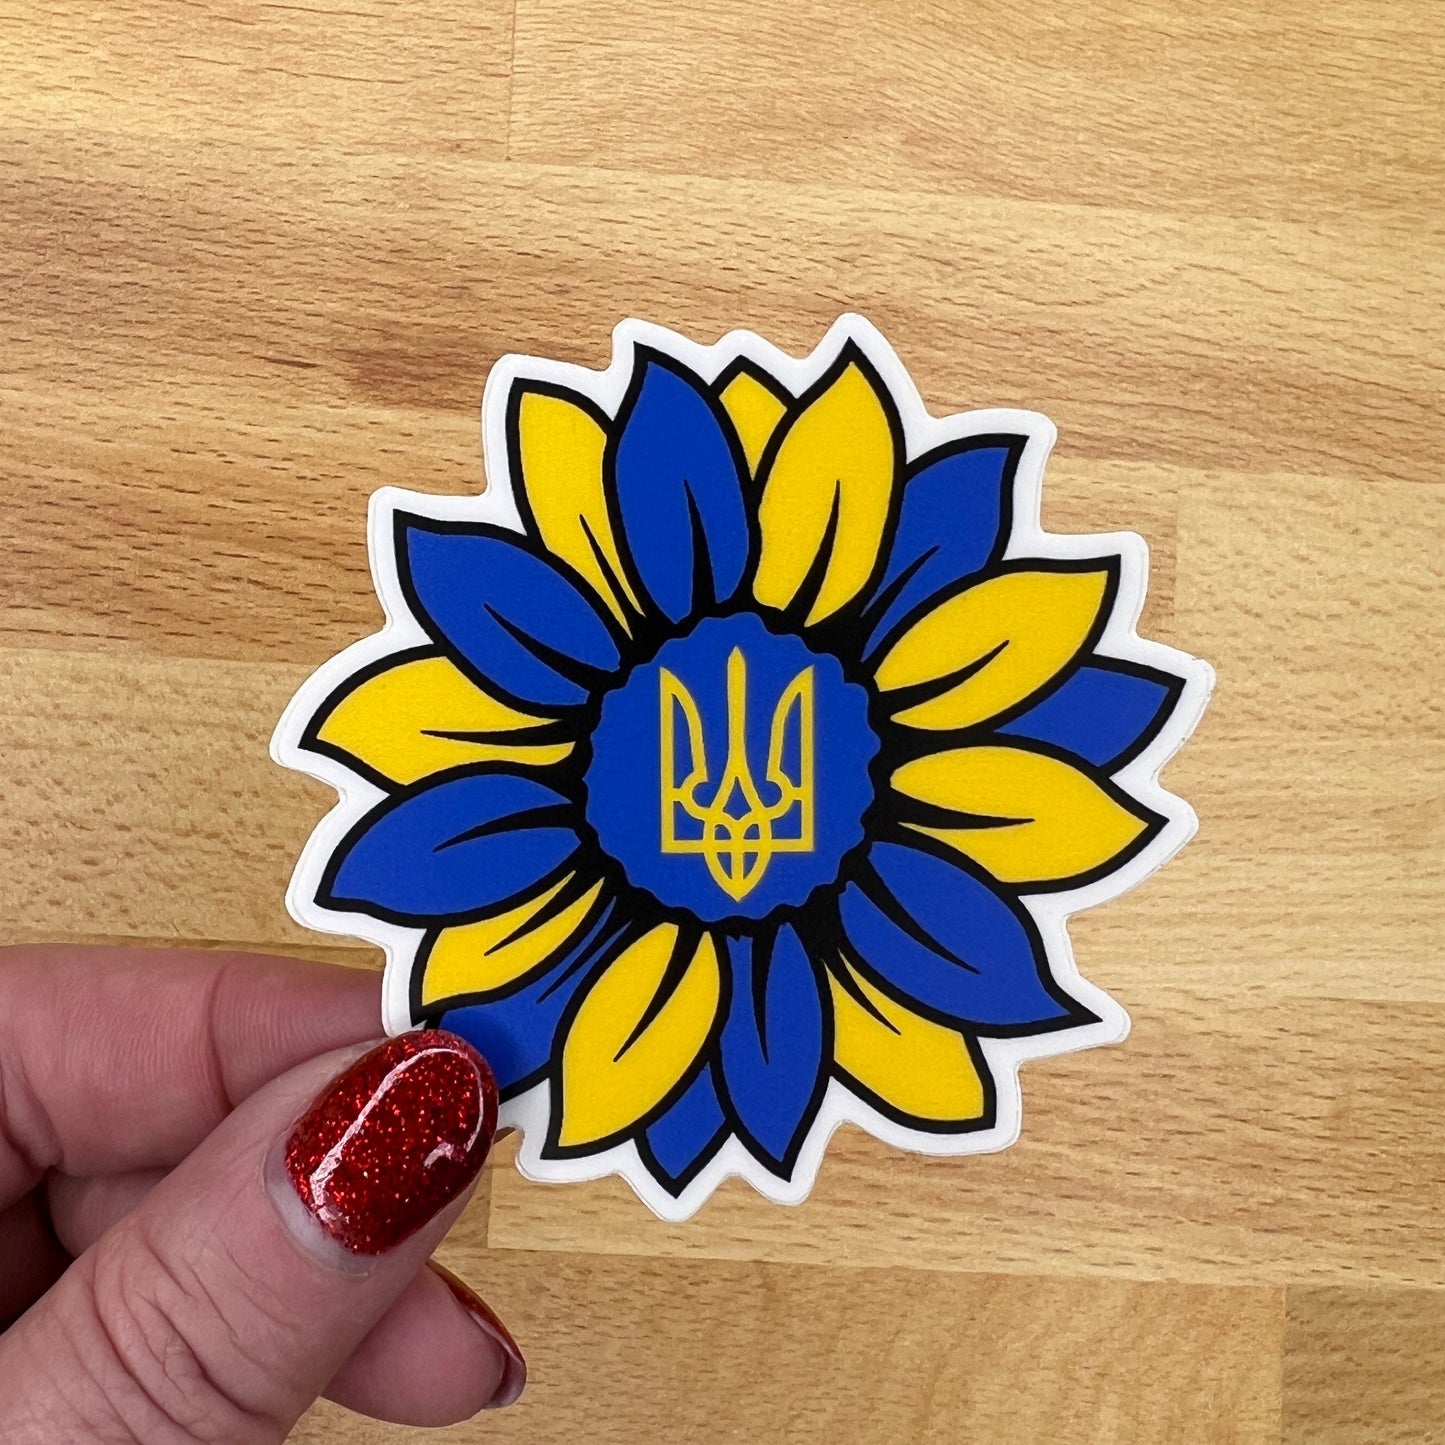 Ukraine sunflower with Tryzub Sticker Decal